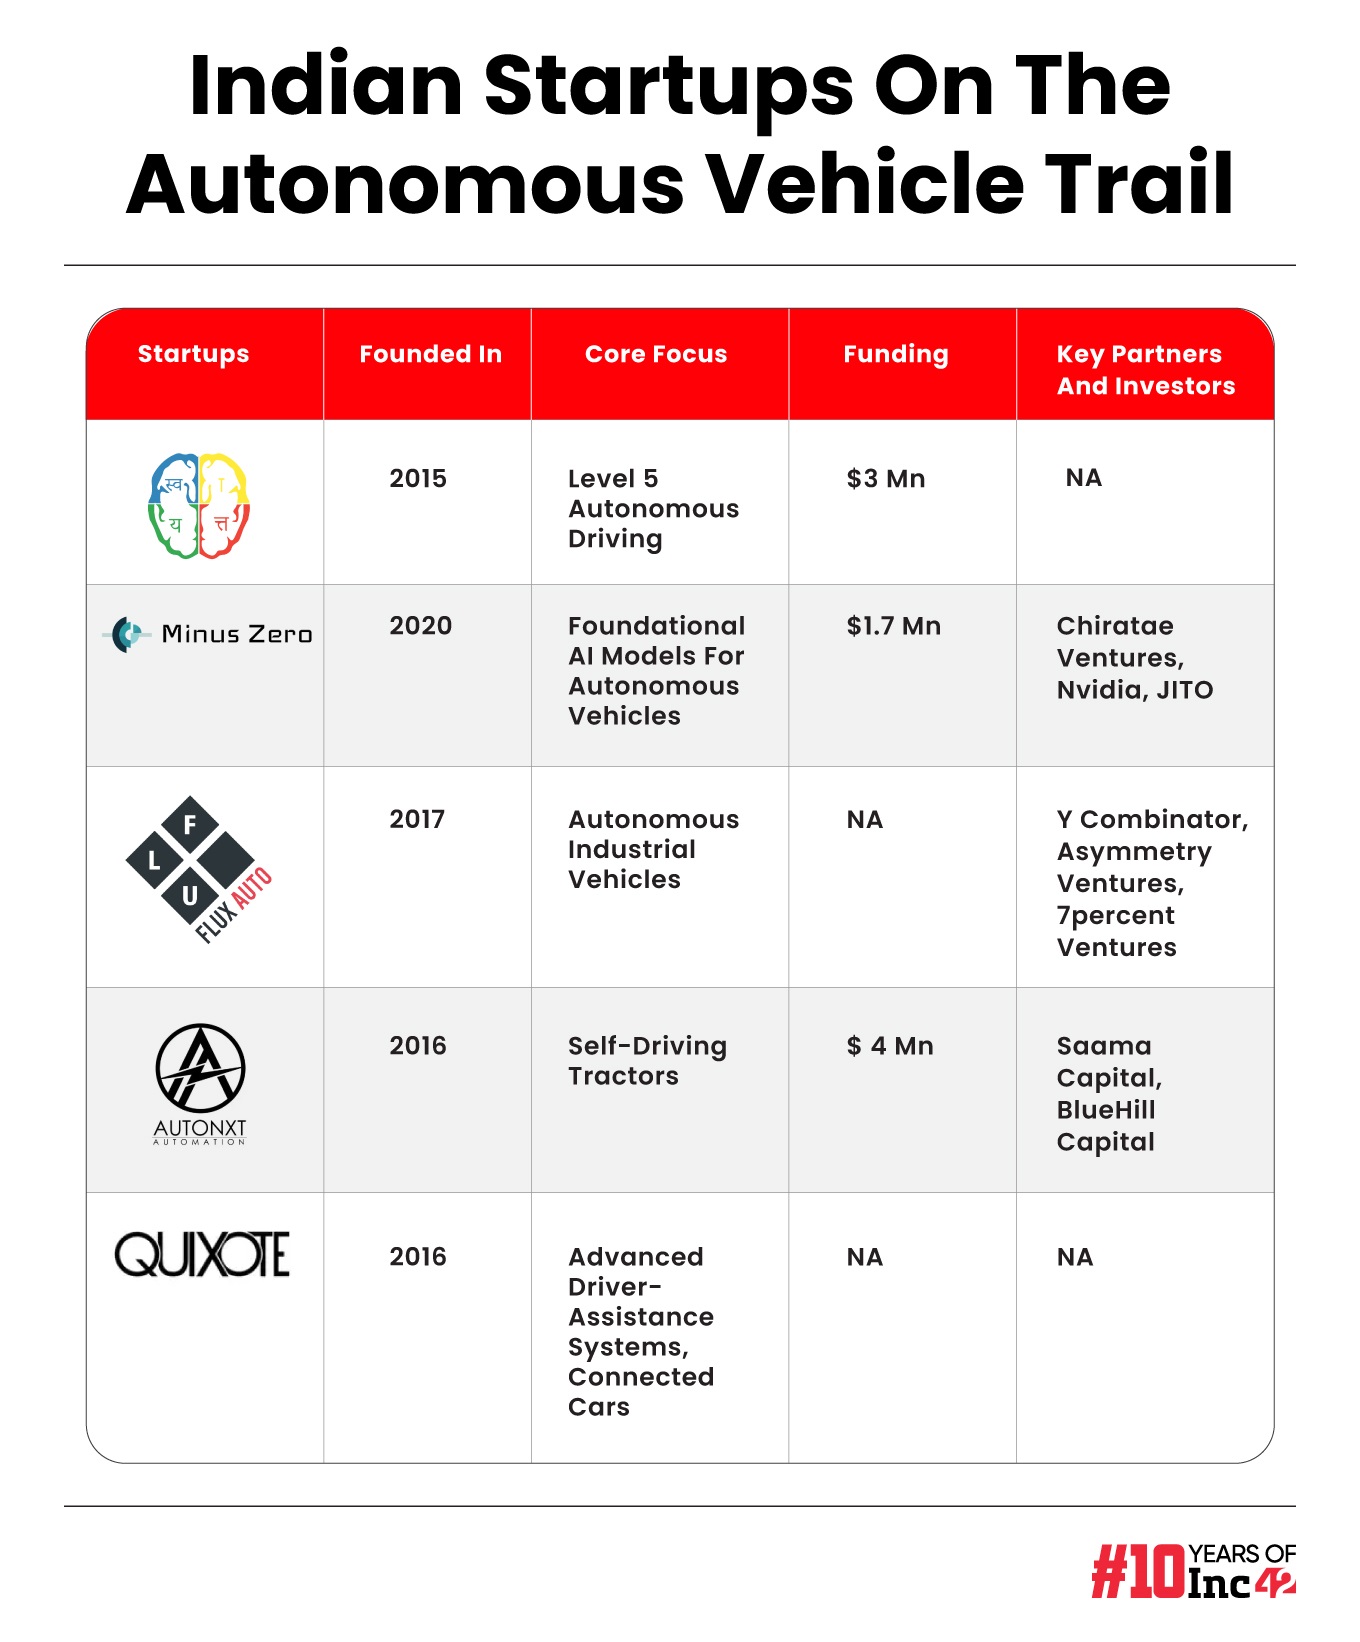 Autonomous driving startups in India